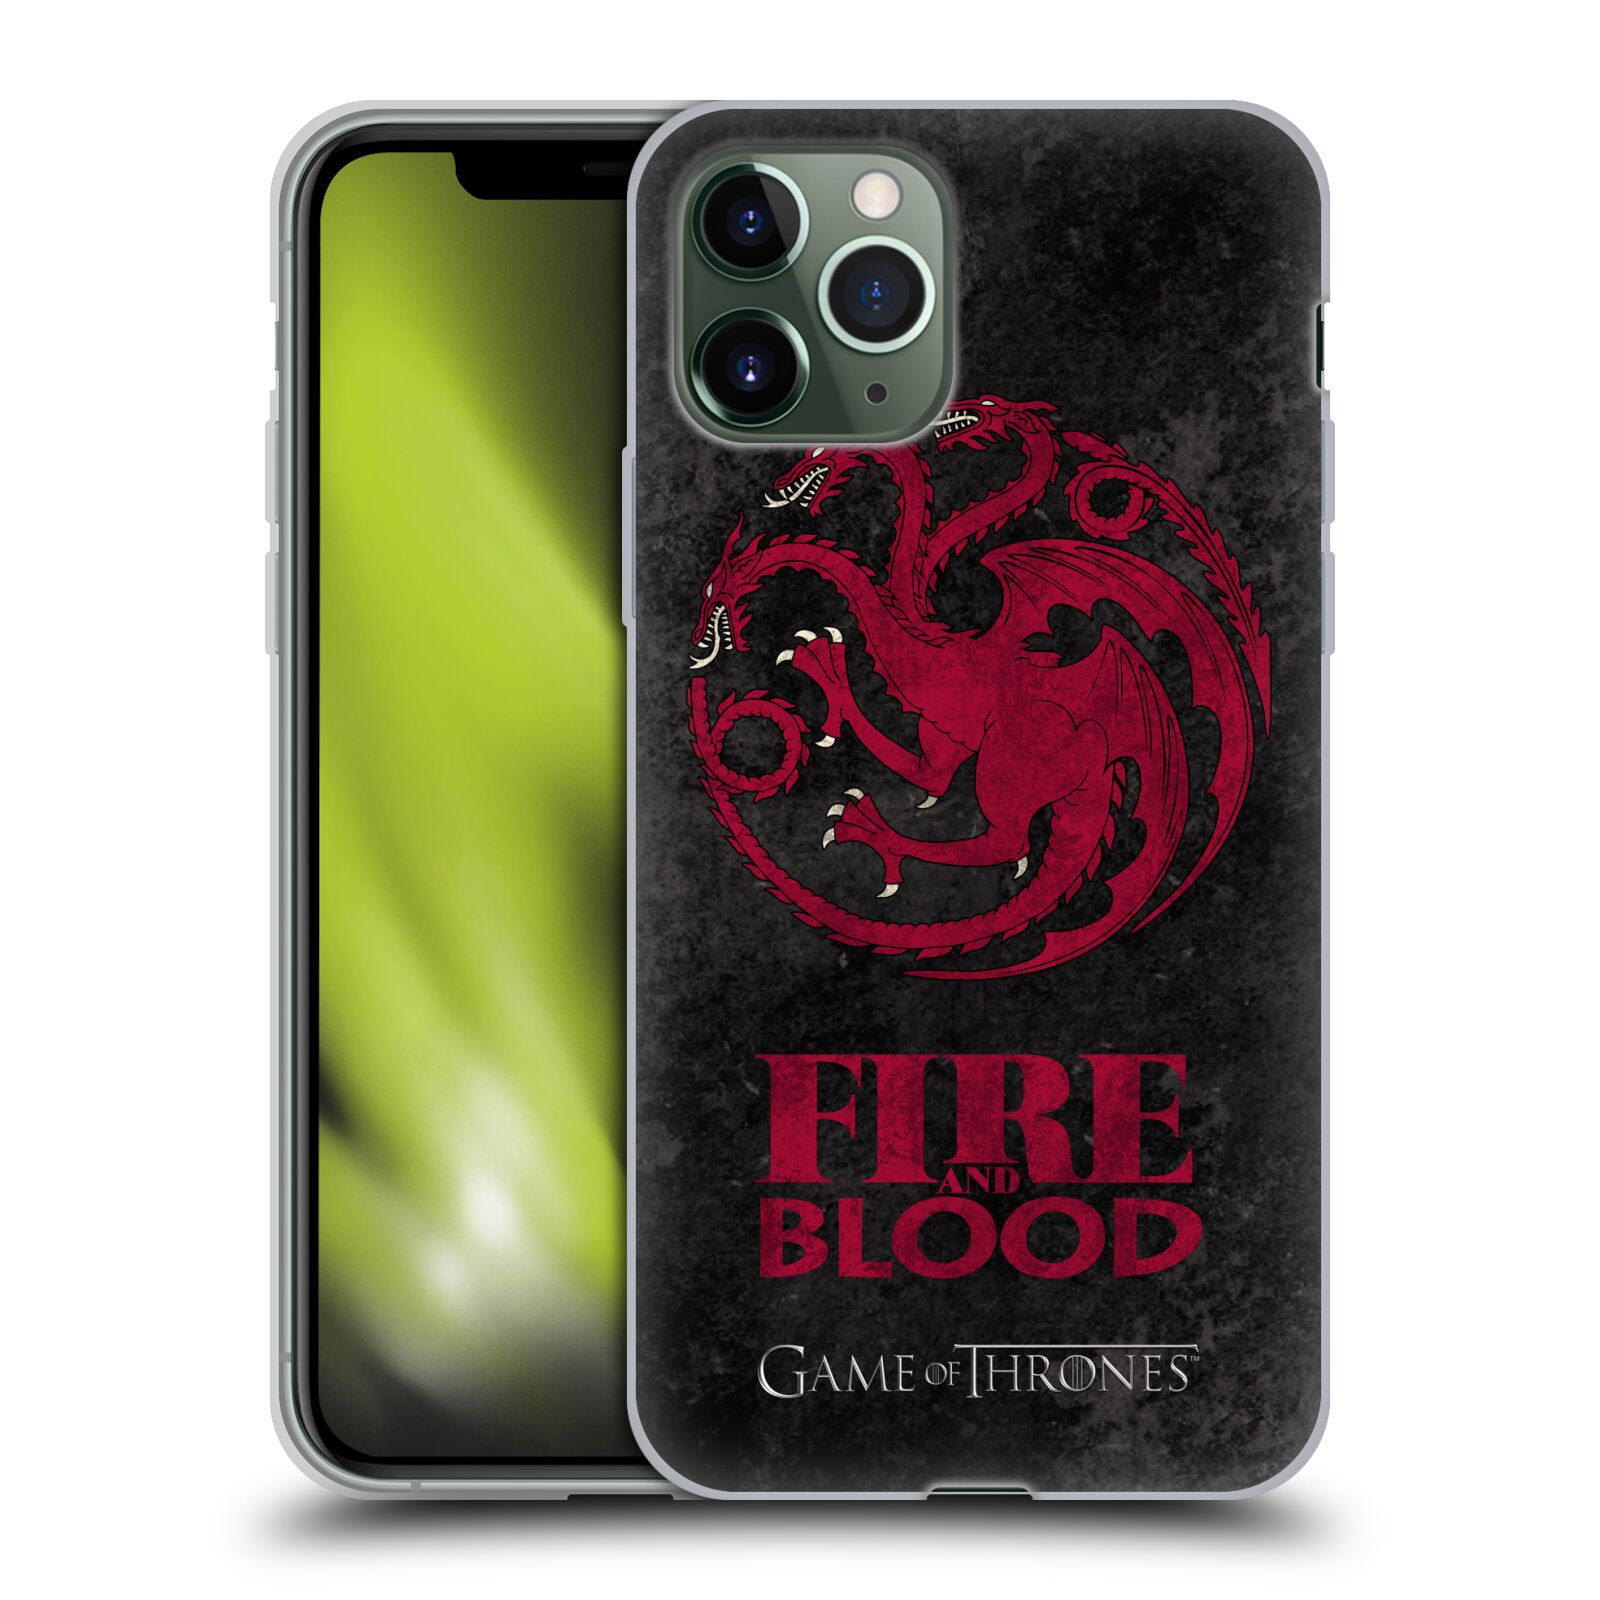 Silikonové pouzdro na mobil Apple iPhone 11 Pro - Head Case - Hra o trůny - Sigils Targaryen - Fire and Blood (Silikonový kryt, obal, pouzdro na mobilní telefon Apple iPhone 11 Pro s displejem 5,8" s motivem Hra o trůny - Sigils Targaryen - Fire and Blood